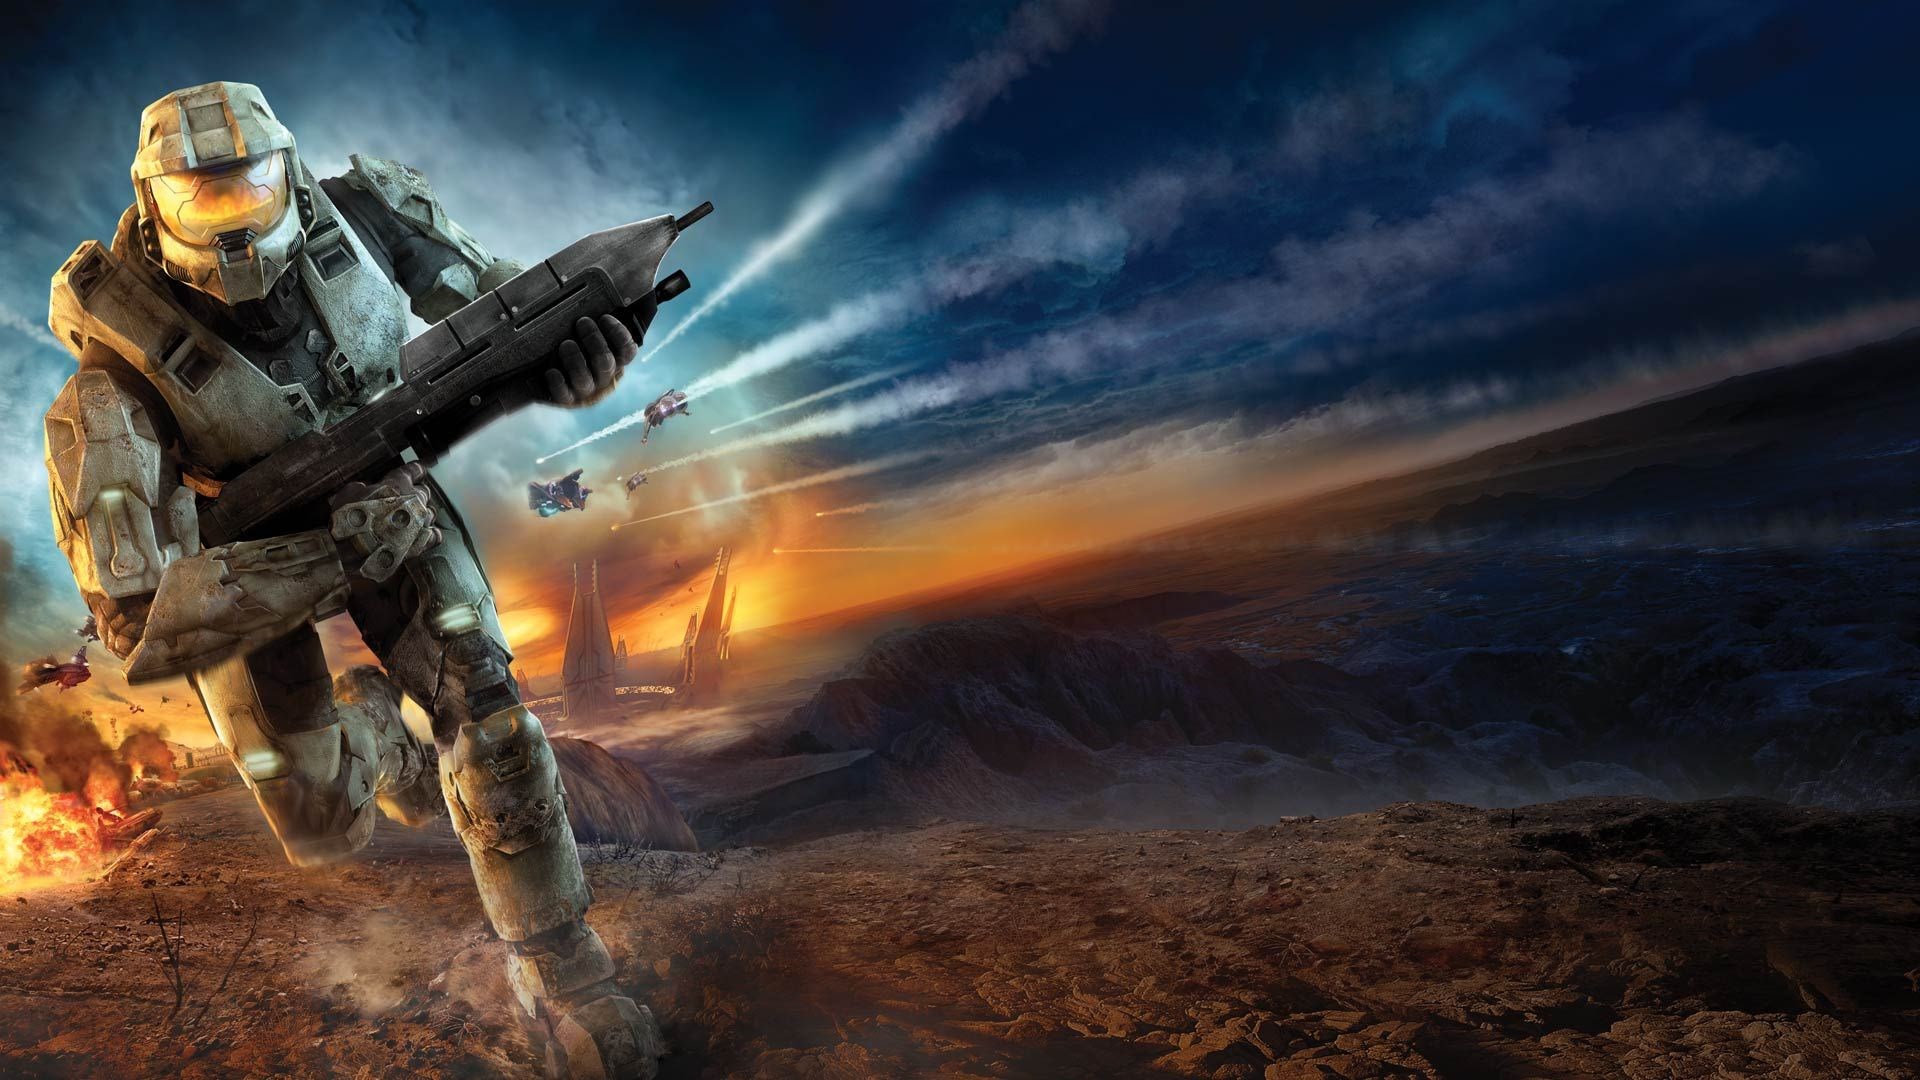 Xbox'ın popüler serisi Halo'nun bir yenisi daha geliştiriliyor